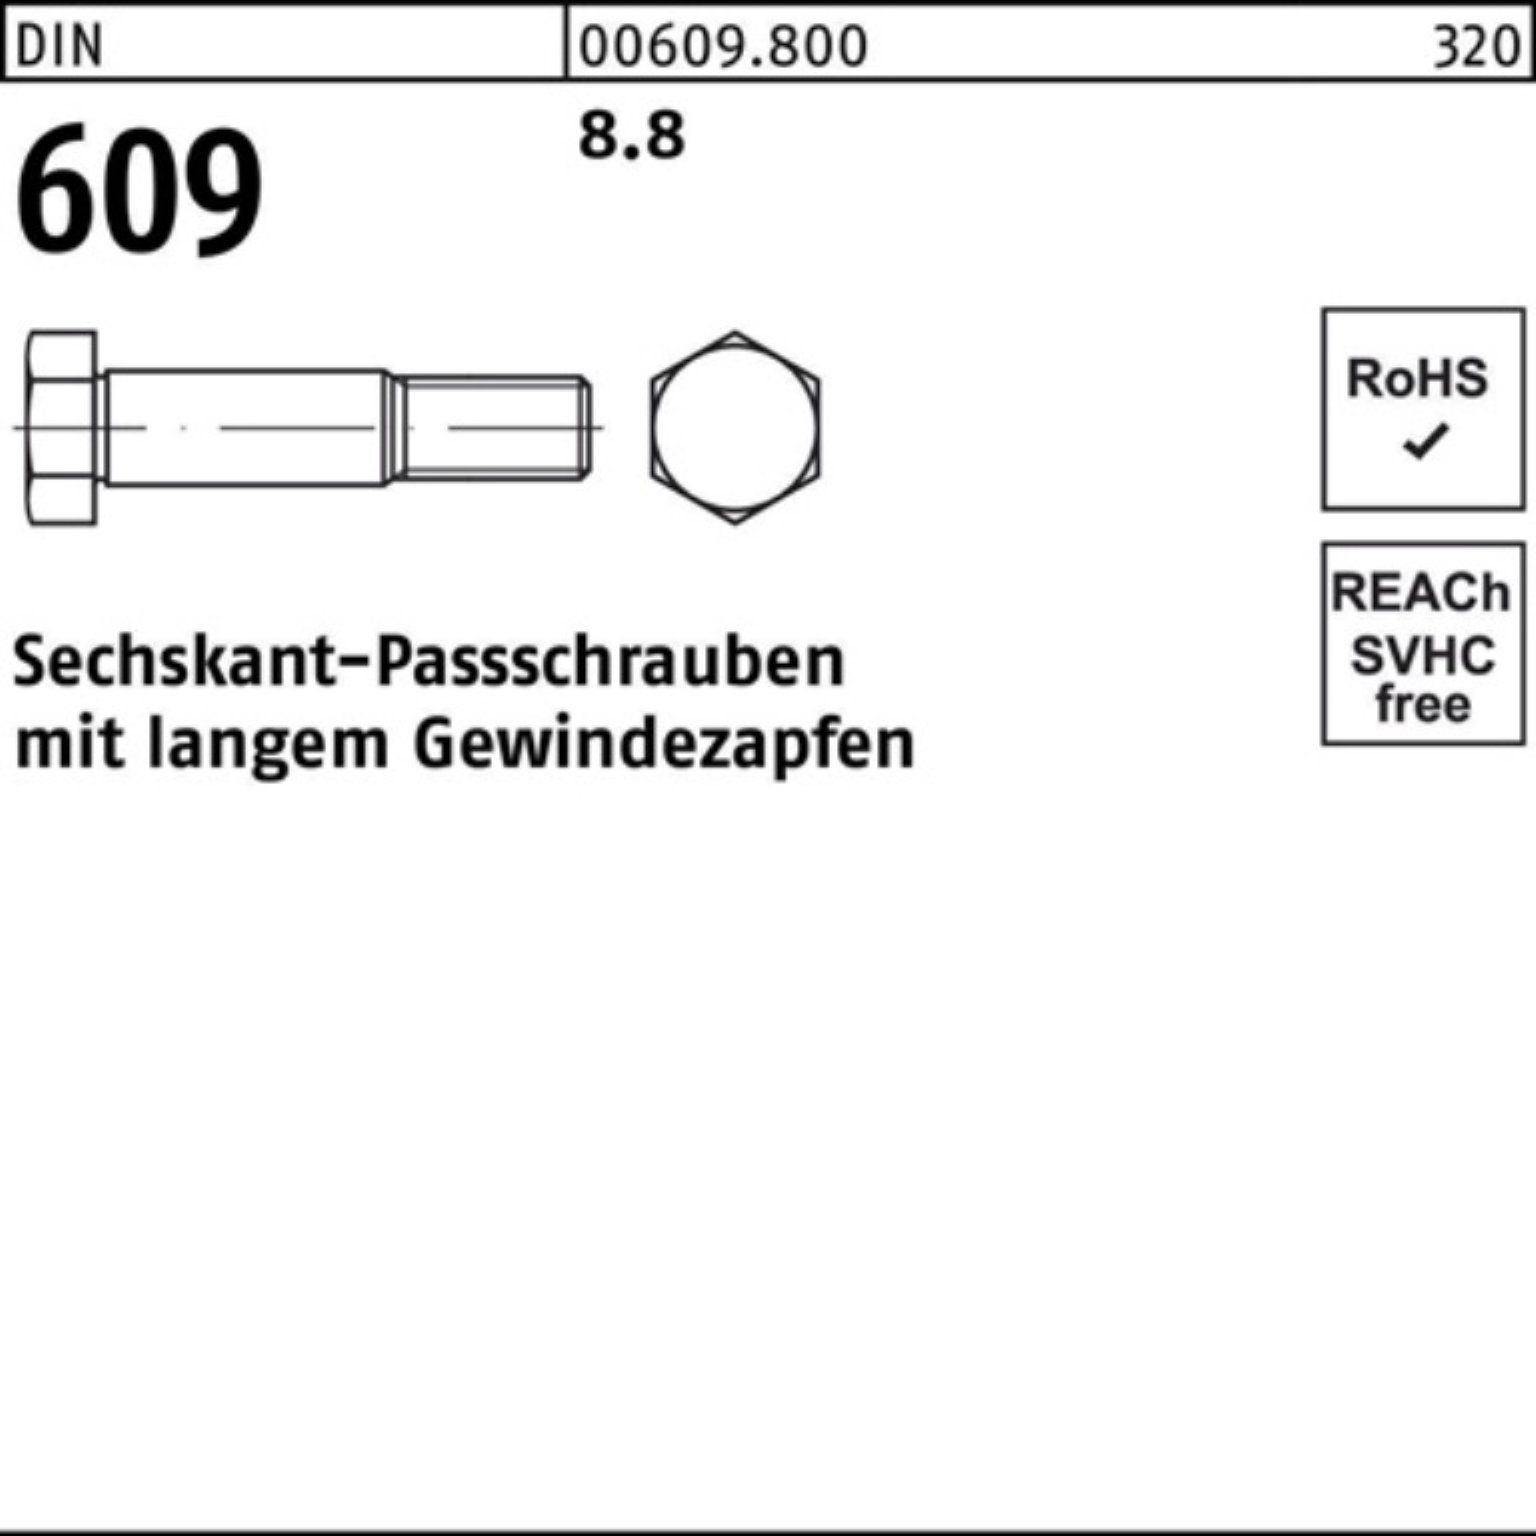 Pack 100er Gewindezapfen DIN 65 Reyher M14x Schraube 609 langem Sechskantpassschraube